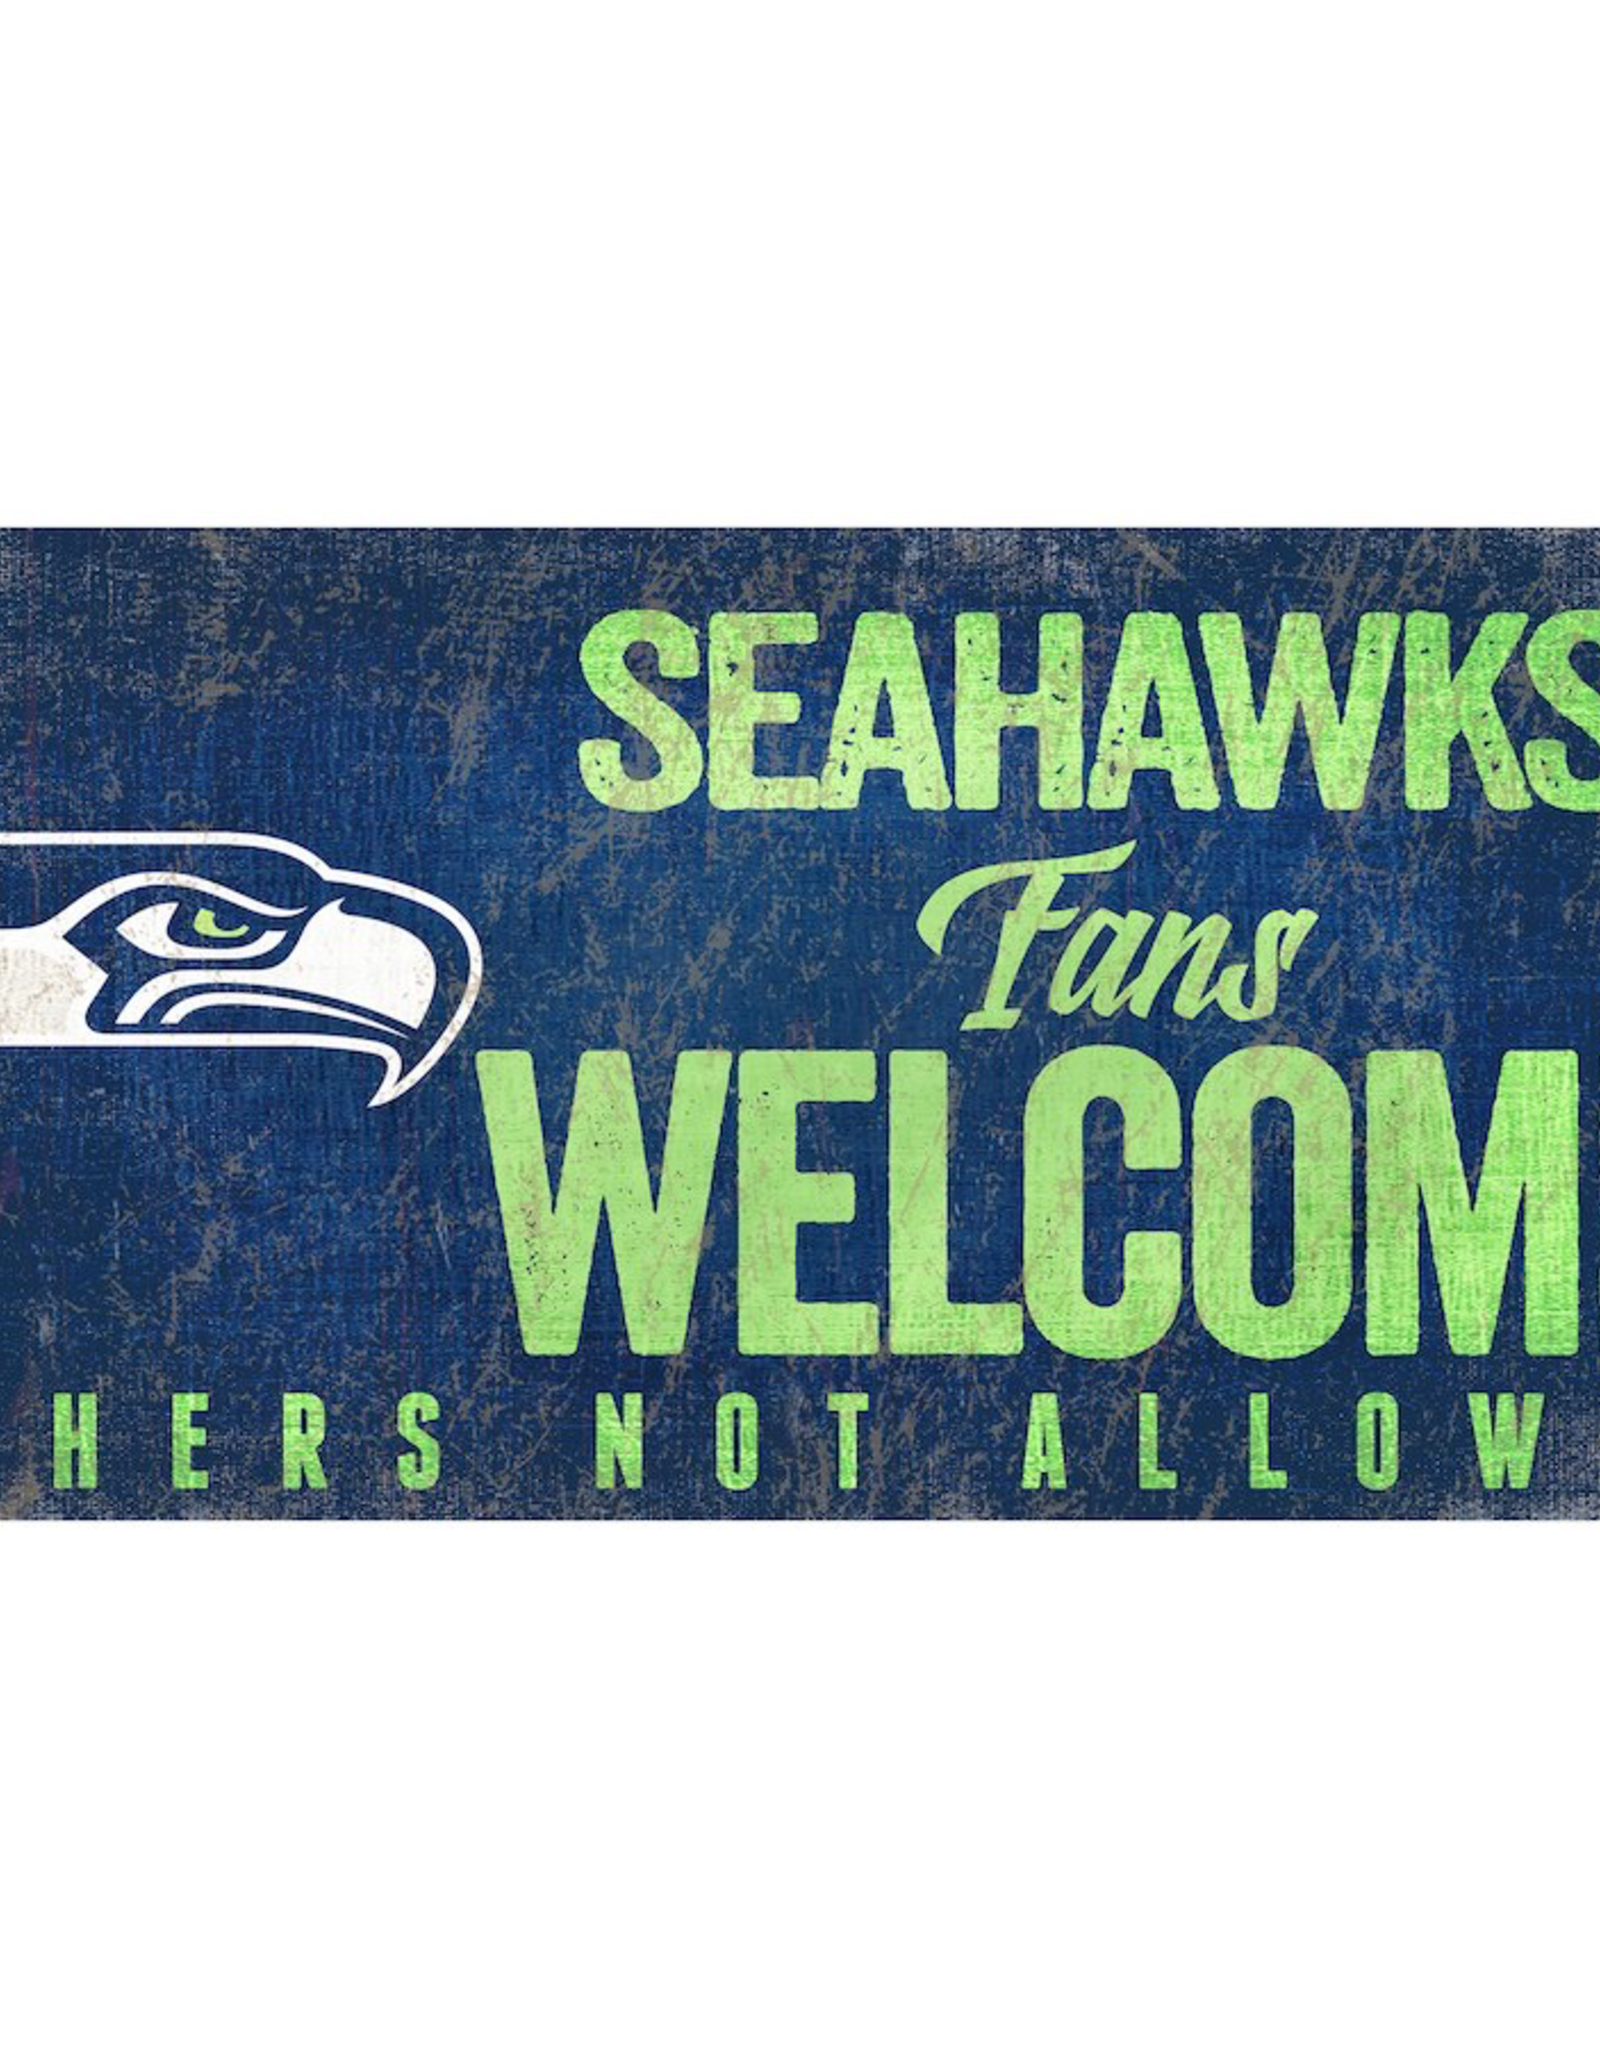 FAN CREATIONS Seattle Seahawks Fans Welcome Wood Sign